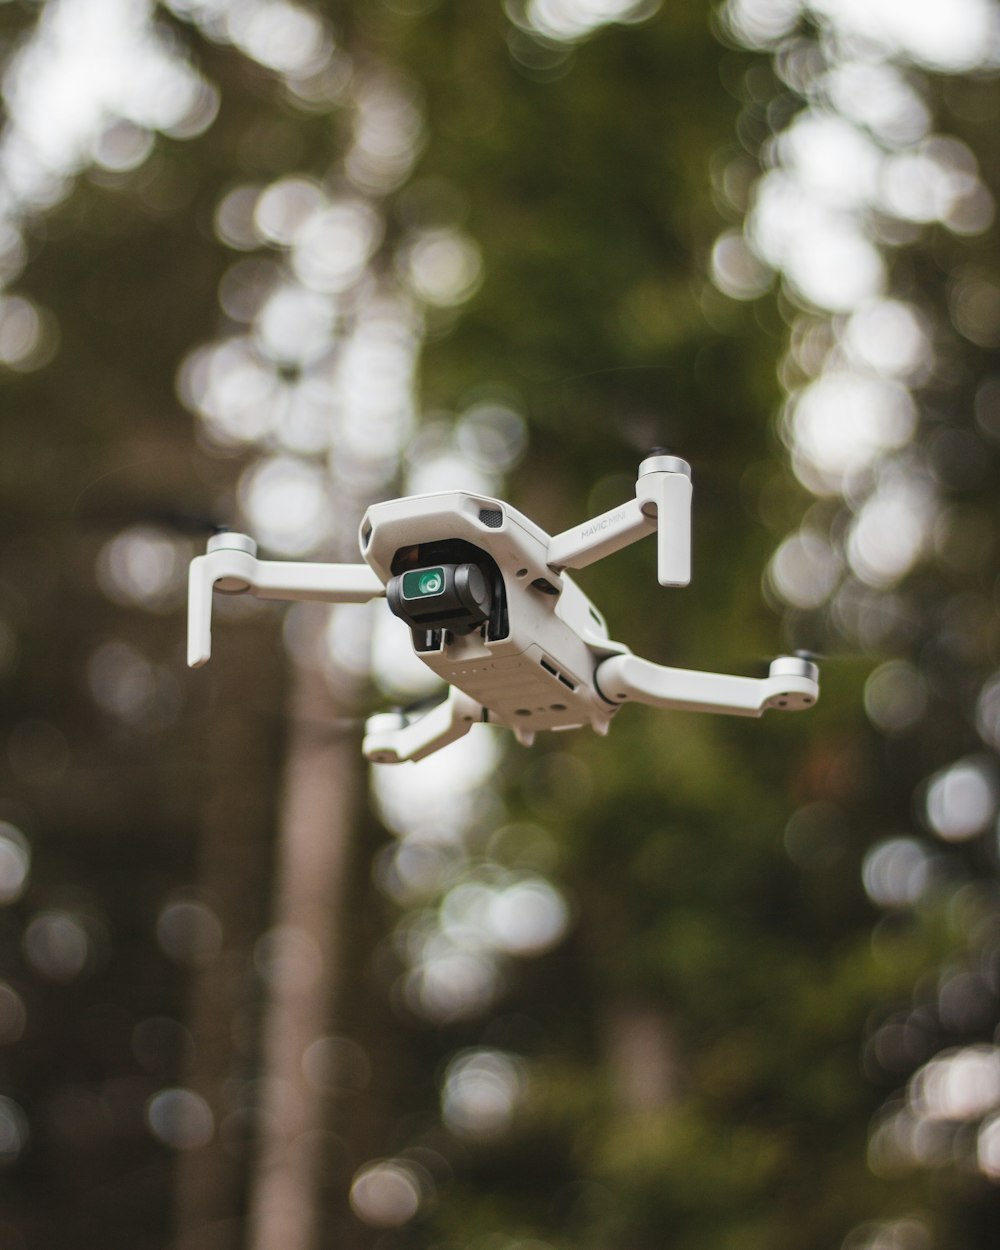 white drone in tilt shift lens